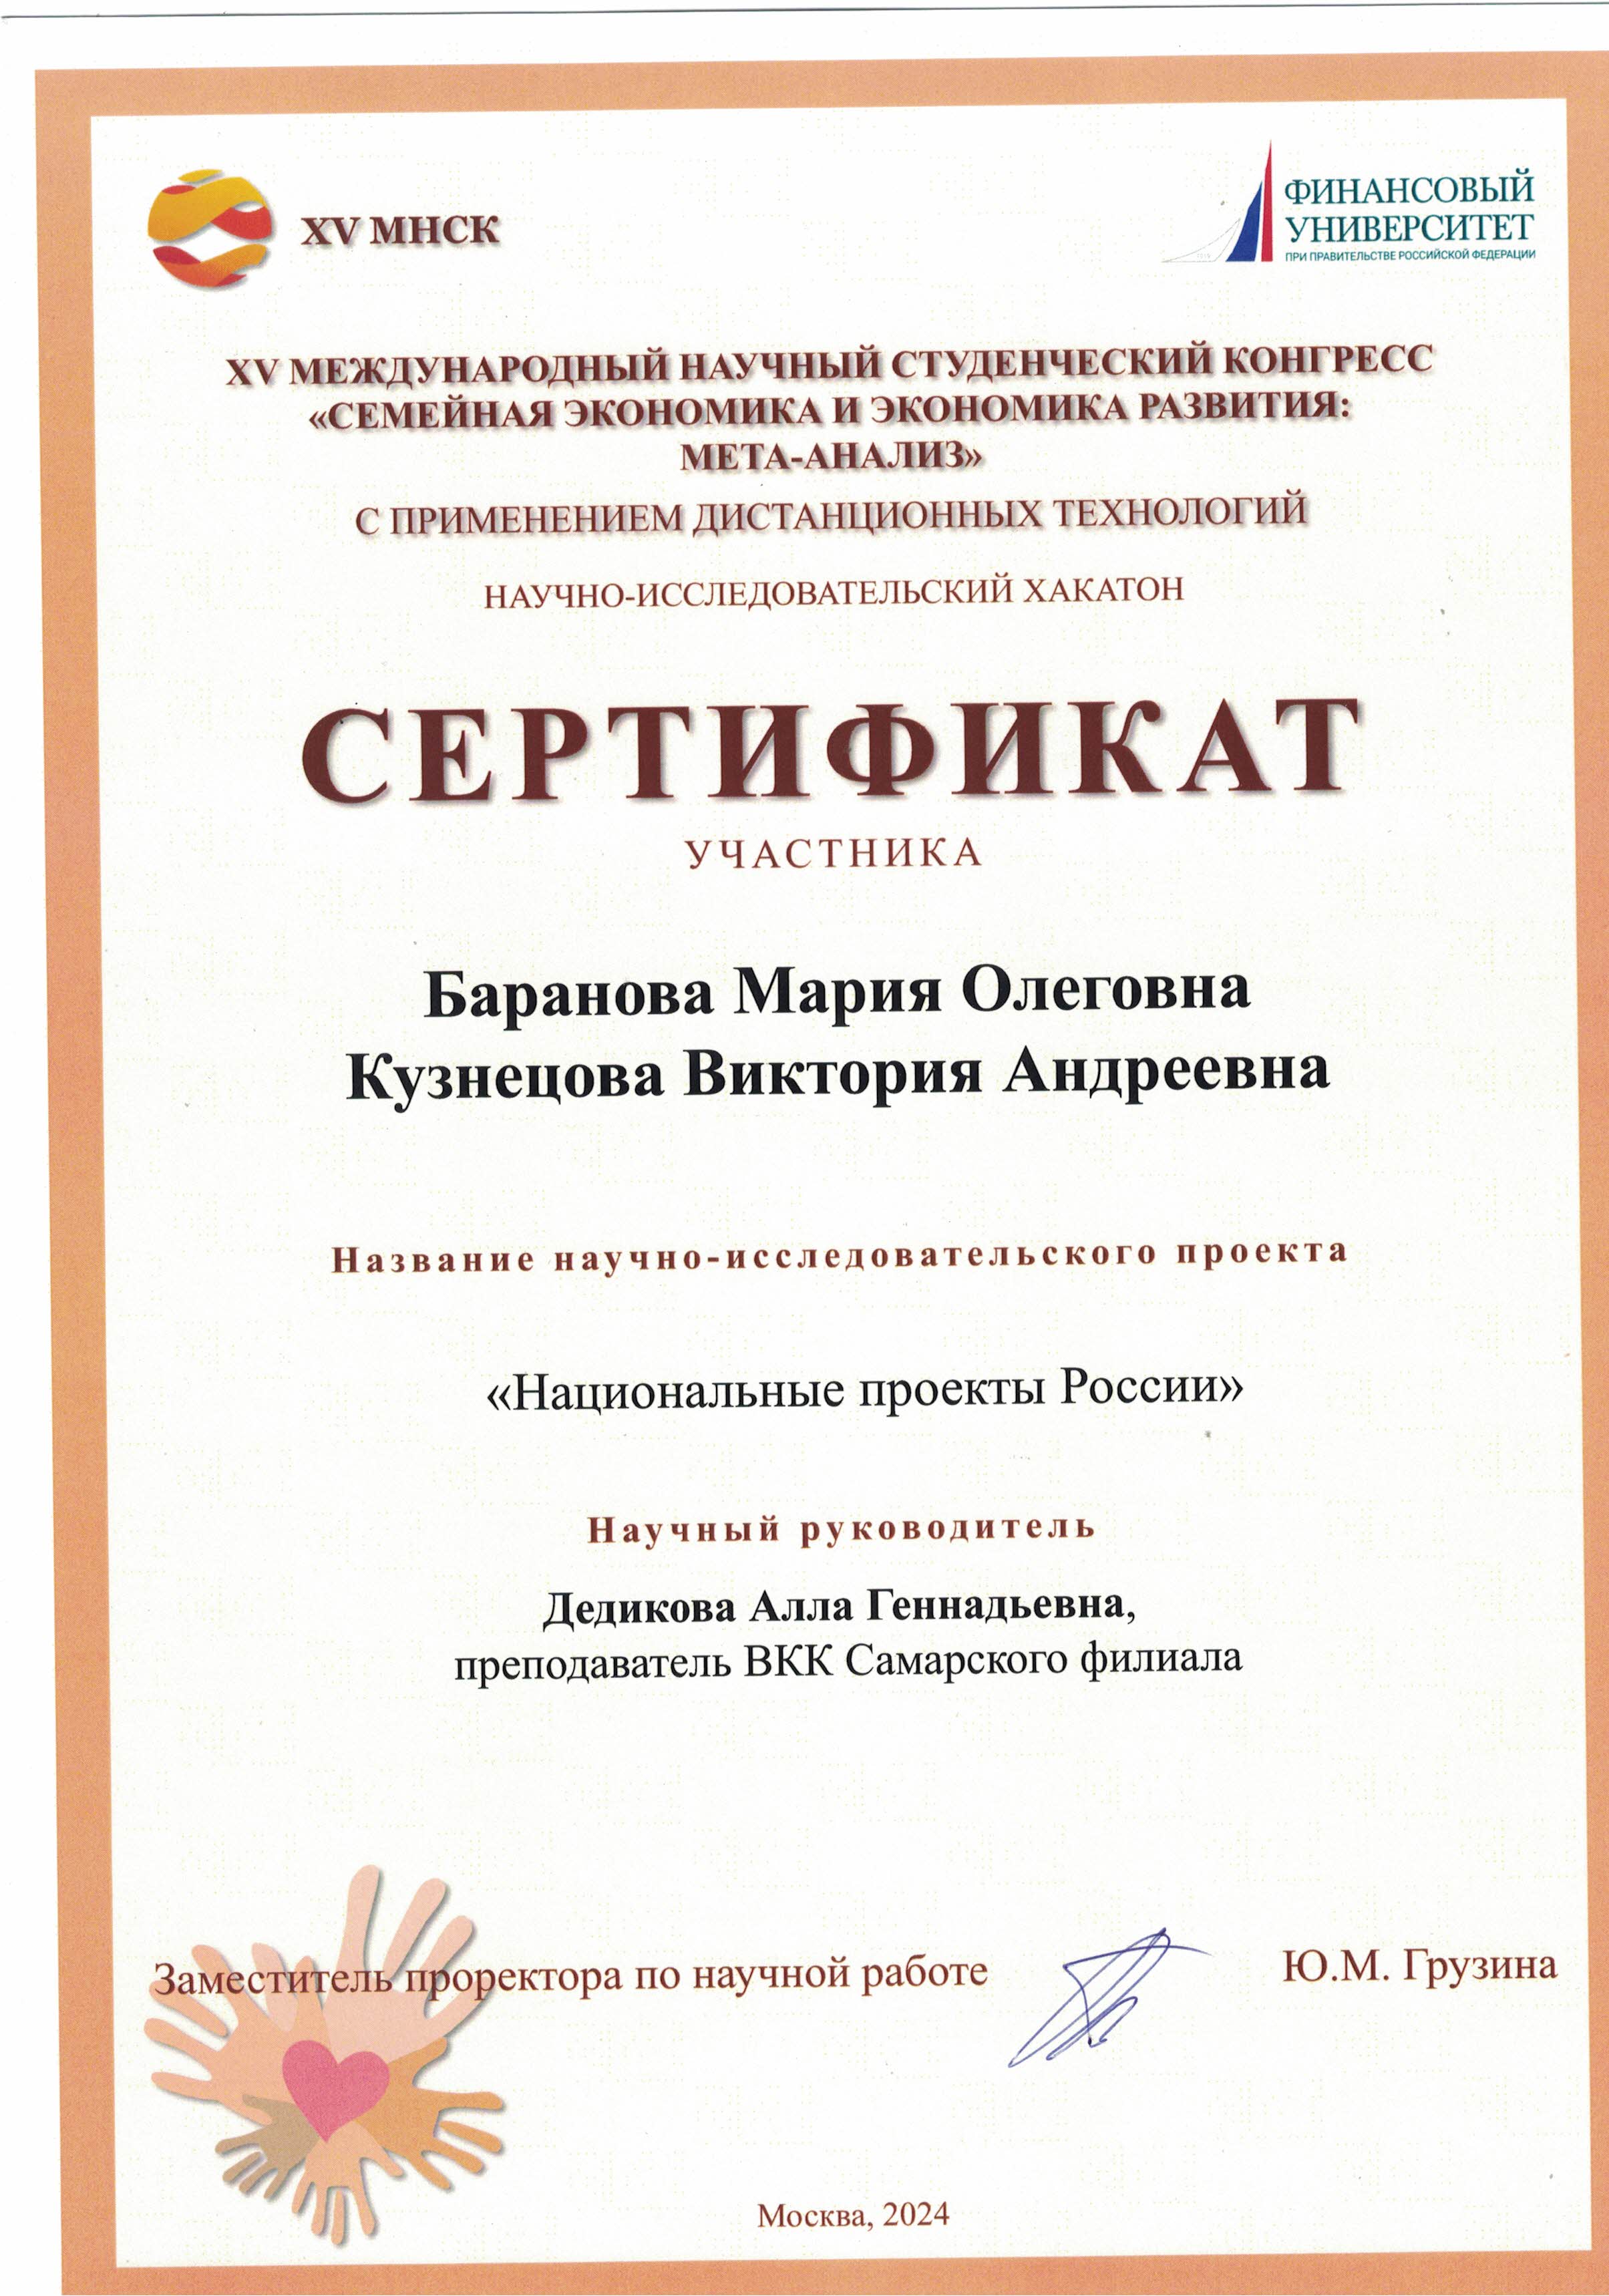 Сертификат участника Студенческий конгресс_2024.jpg